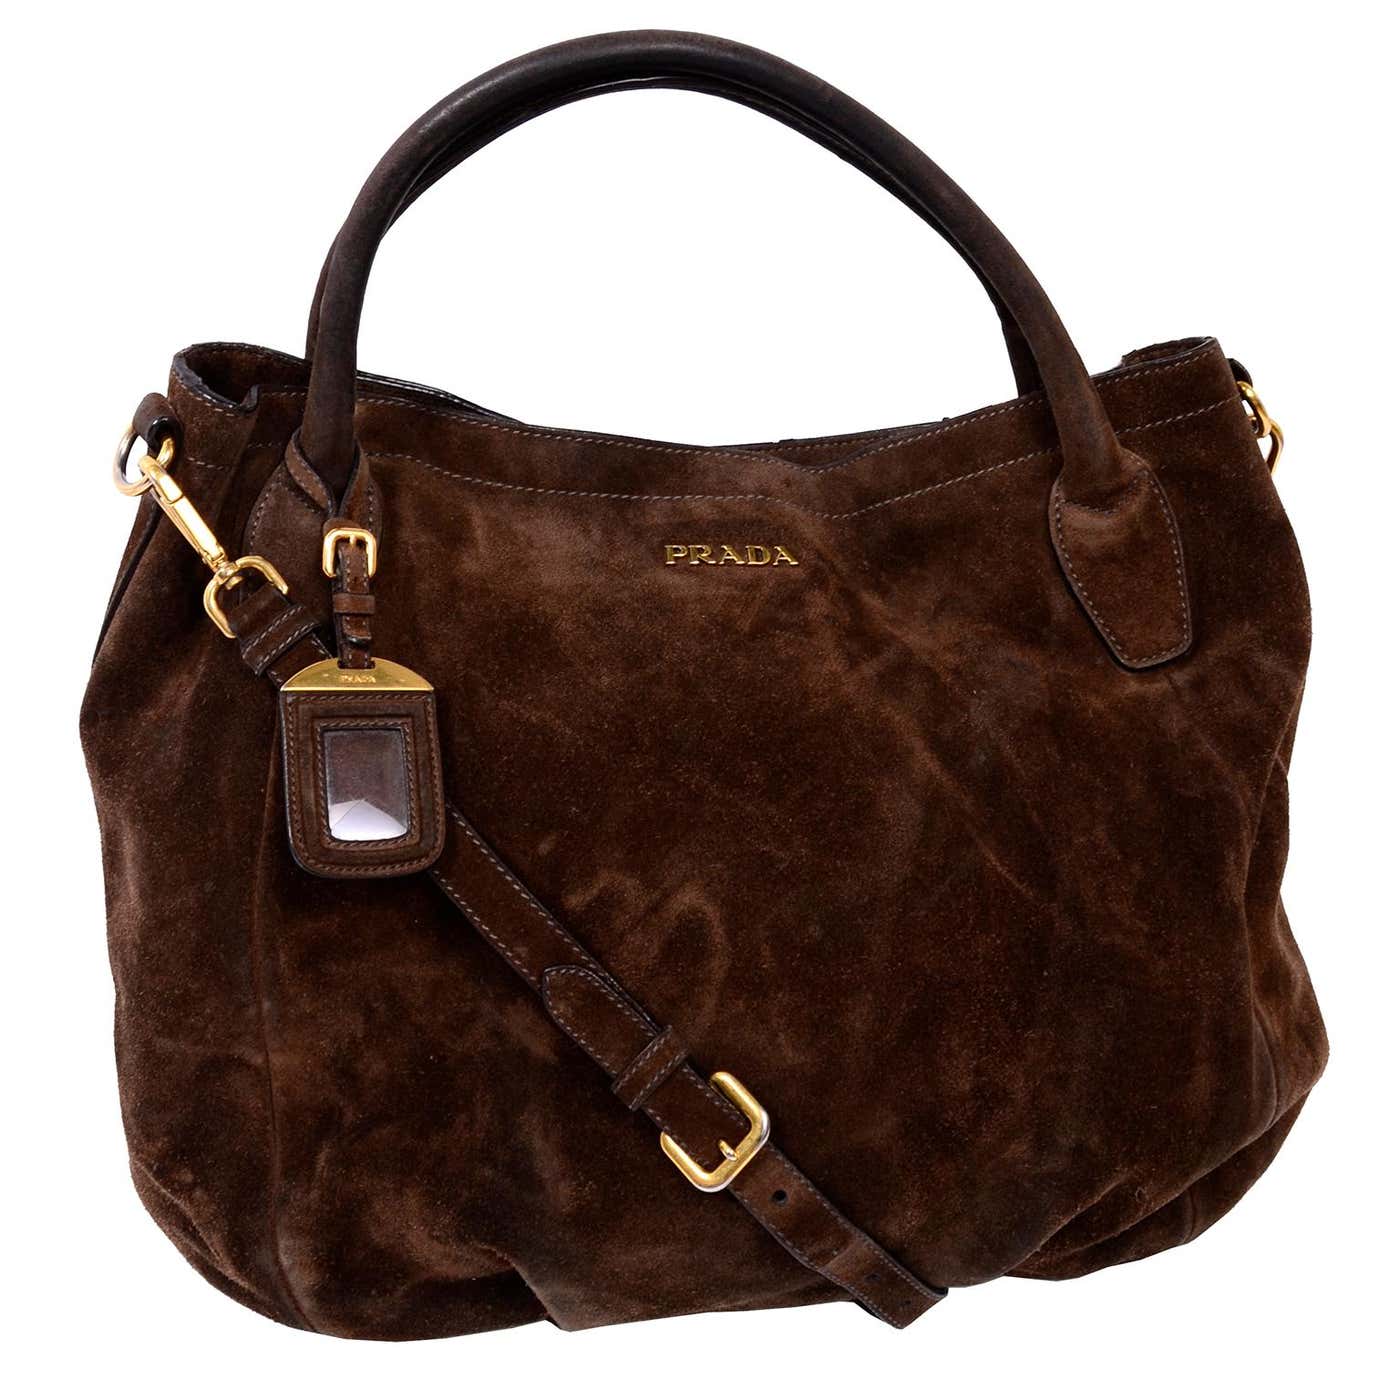 Prada Scamosciato Handbag in Chocolate Brown Suede Shoulder Bag at ...